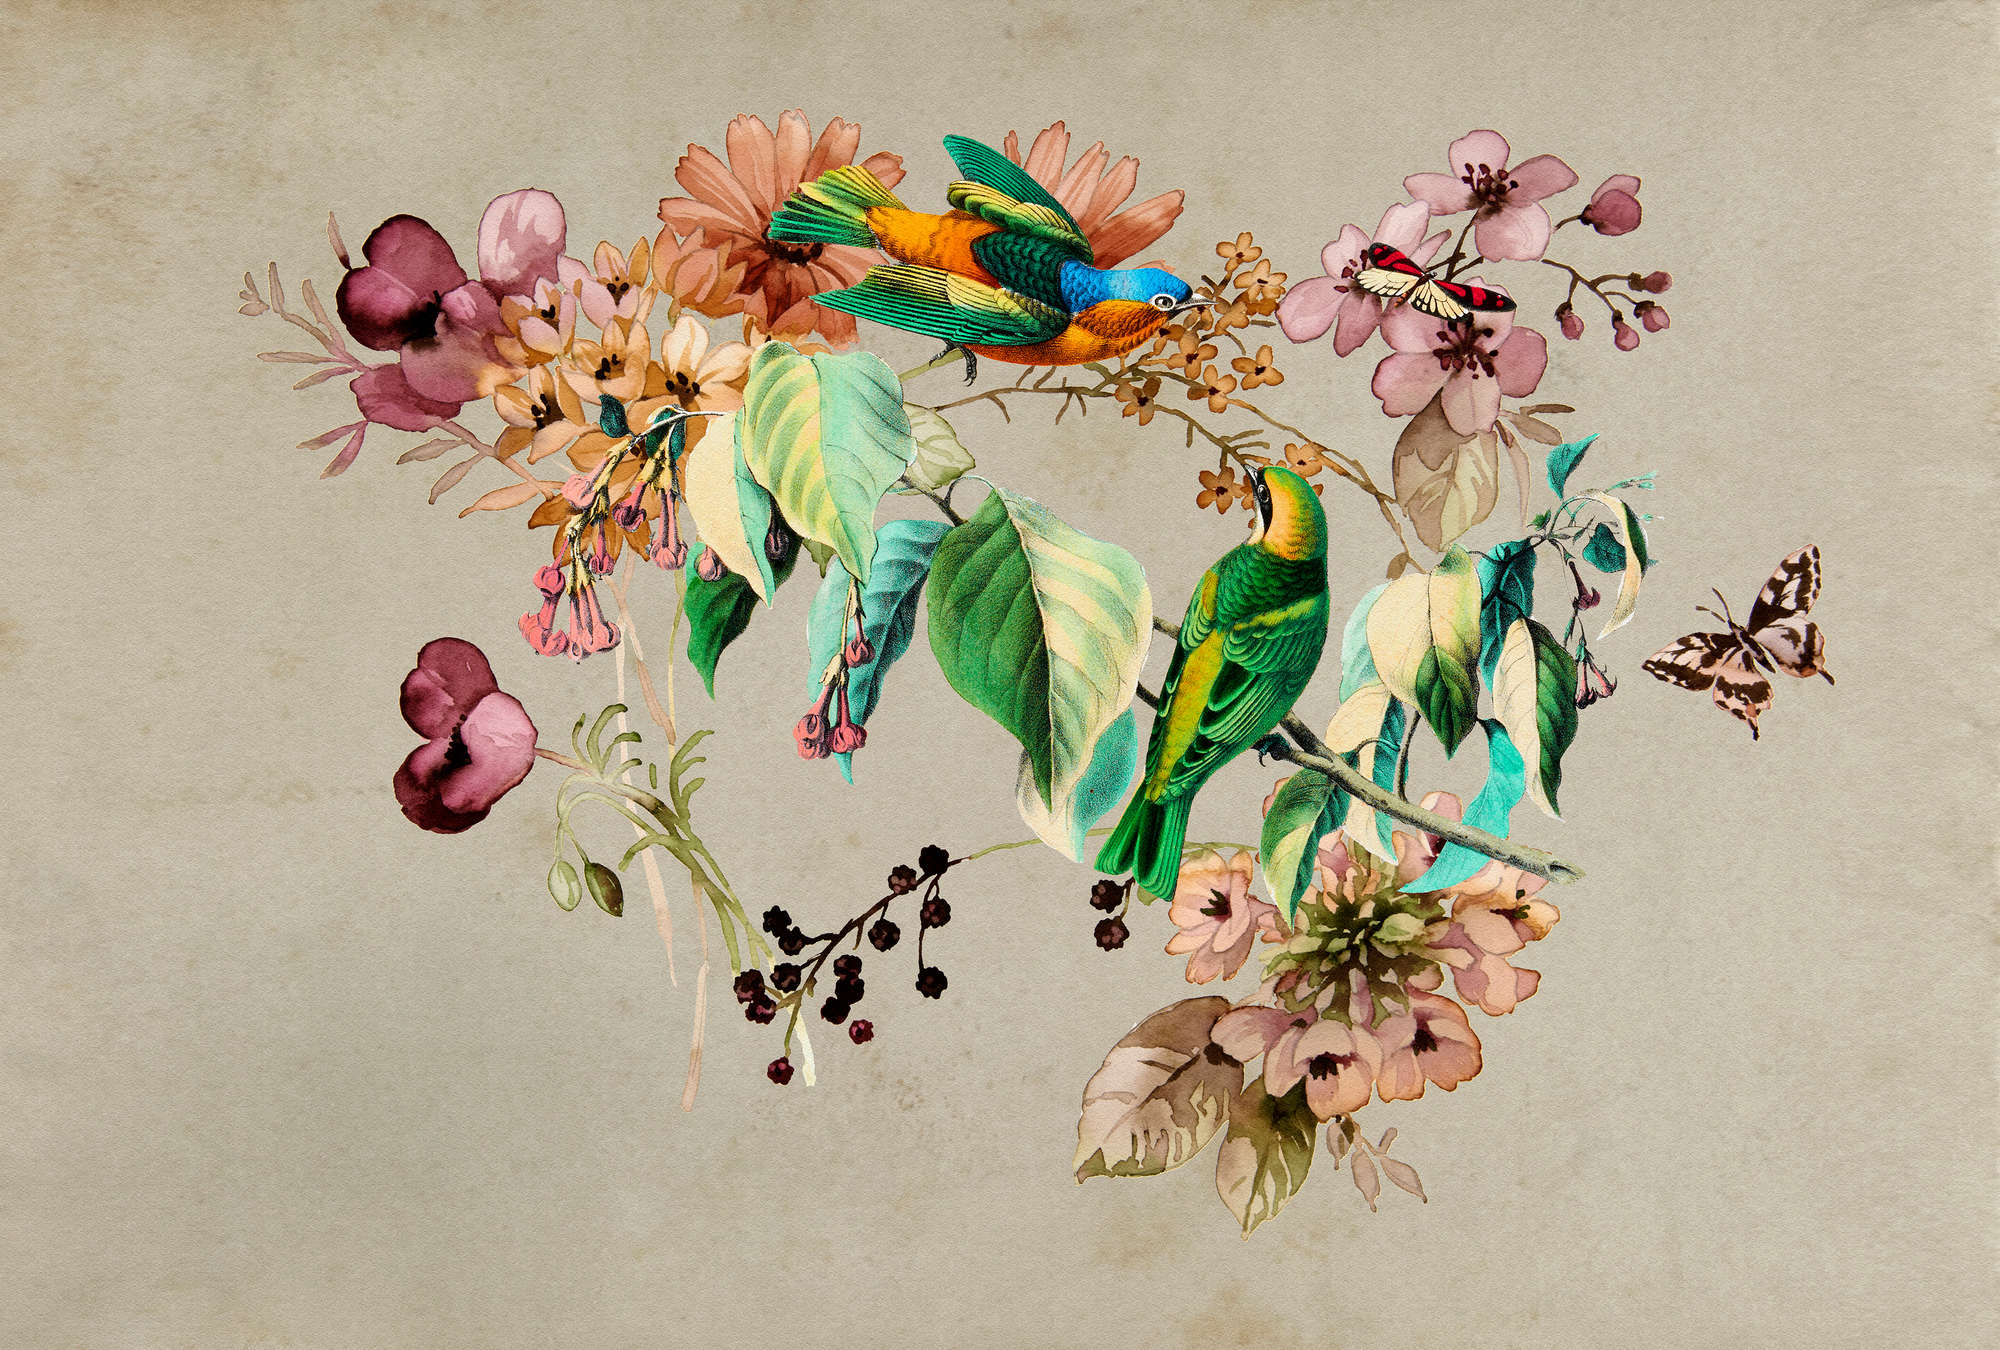             Love Nest 1 - Fotomurali con fiori acquerellati e uccelli colorati
        